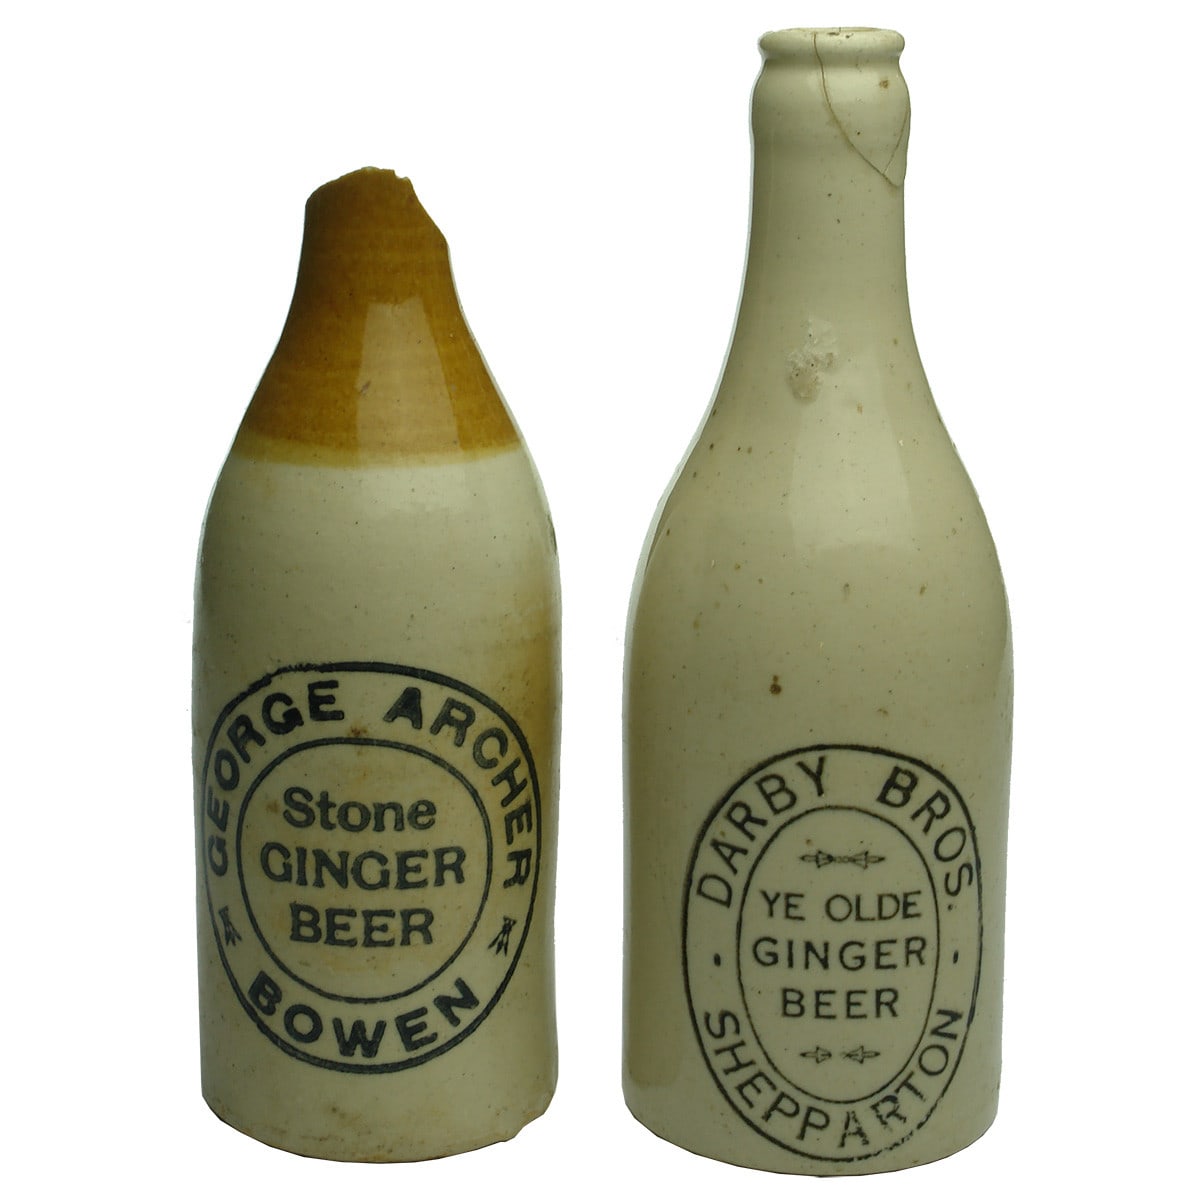 Ginger Beers. George Archer, Bowen; Darby Bros., Shepparton. (Queensland, Victoria)